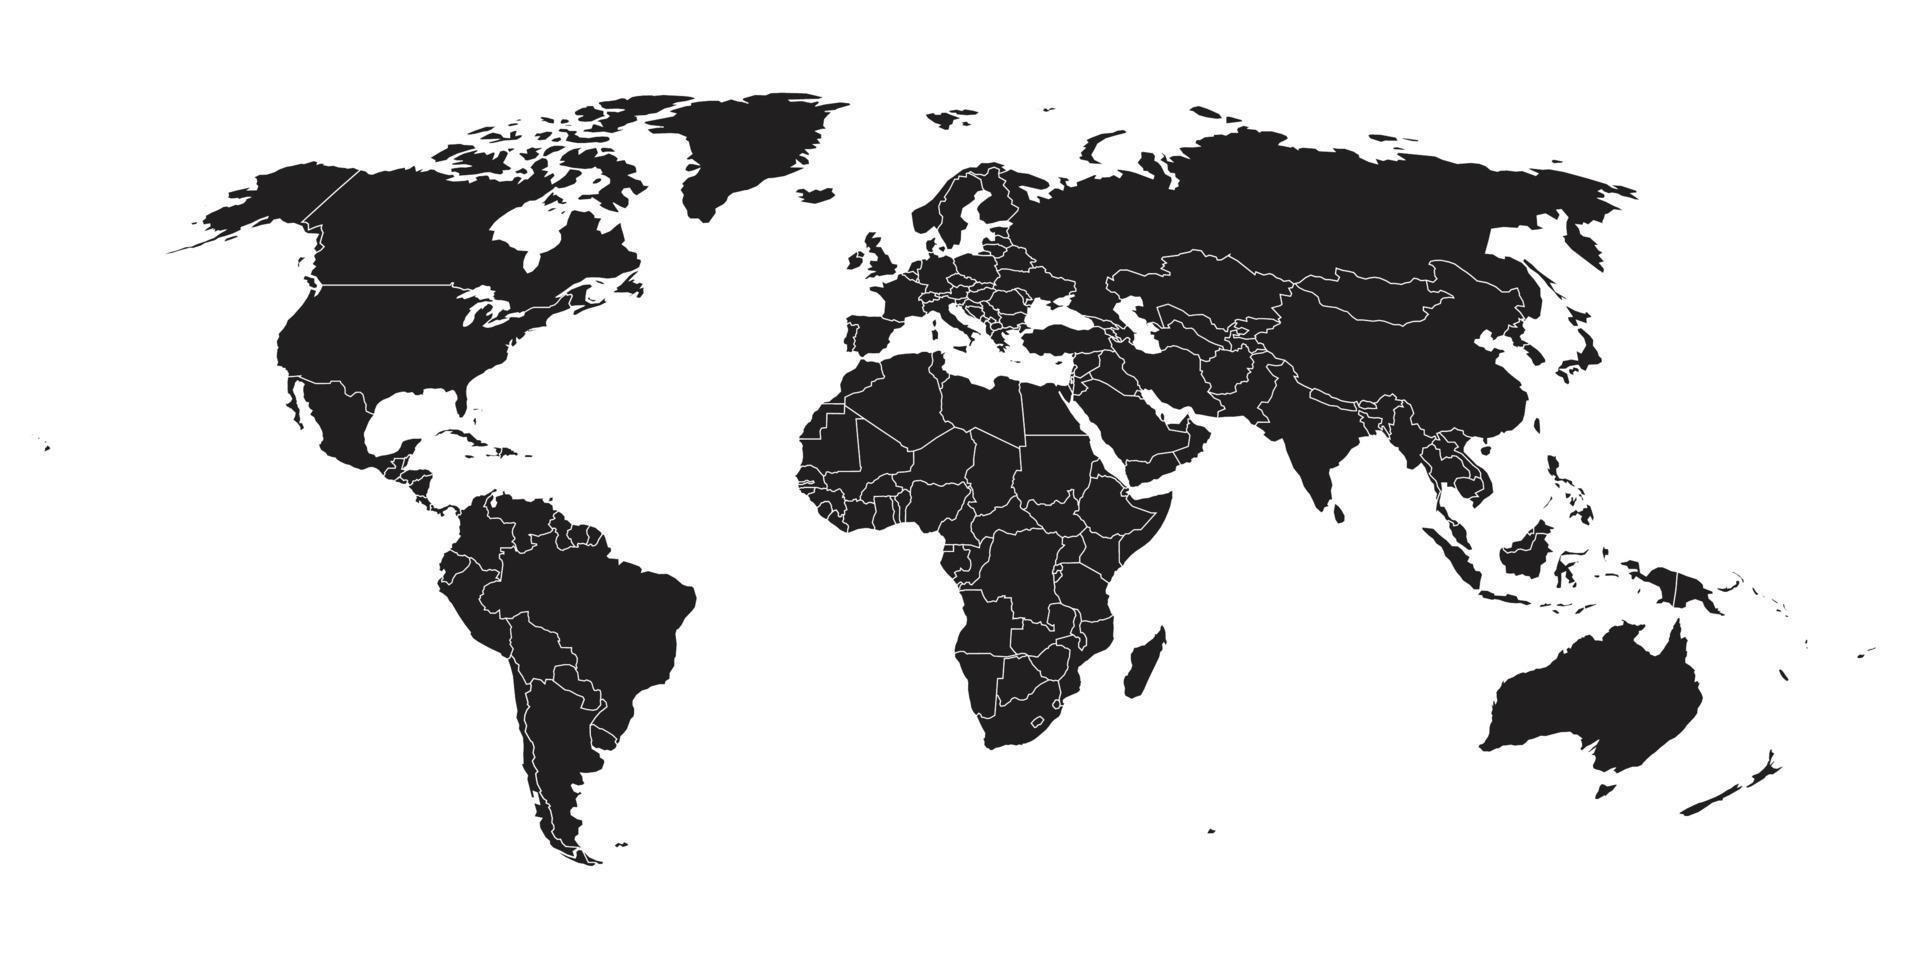 världskarta på vit bakgrund. världskartmall med kontinenter, nord- och sydamerika, europa och asien, afrika och australien vektor